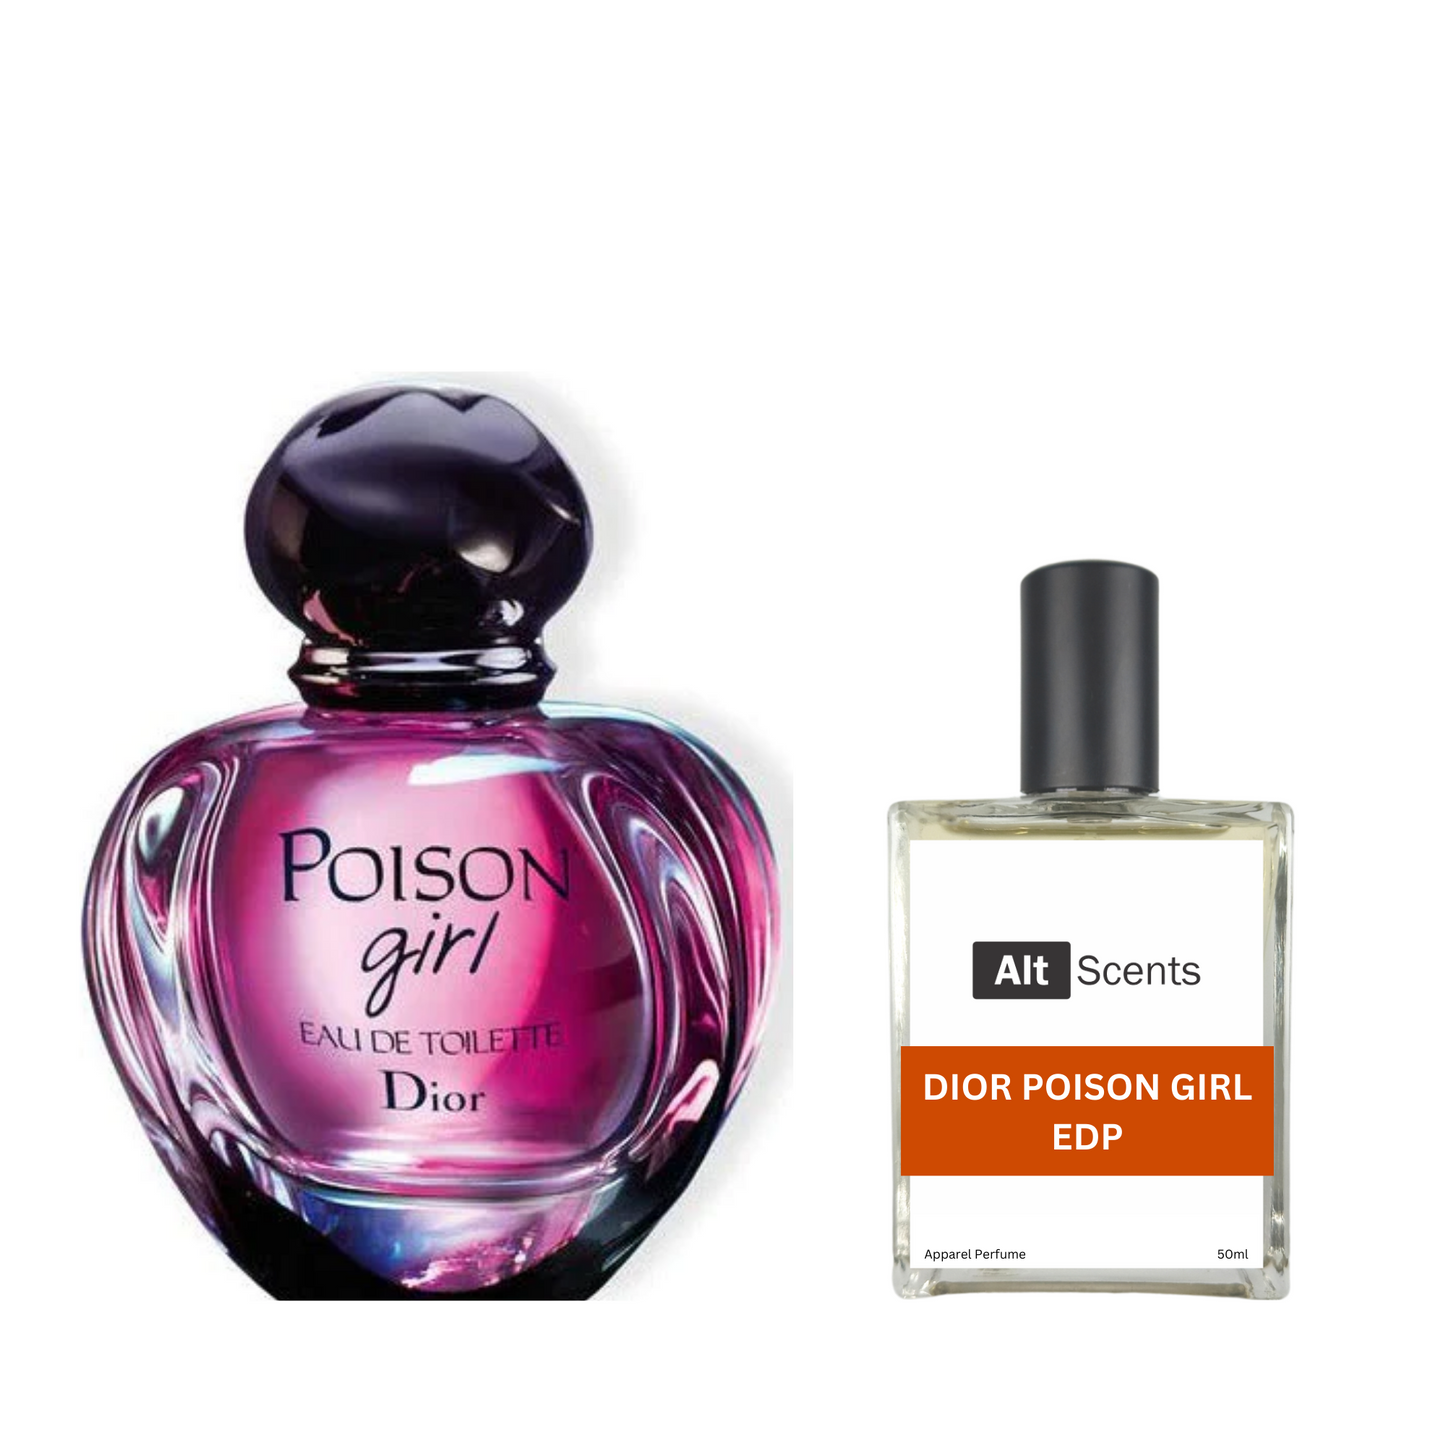 Dior Poison Girl EDP type Perfume for Women